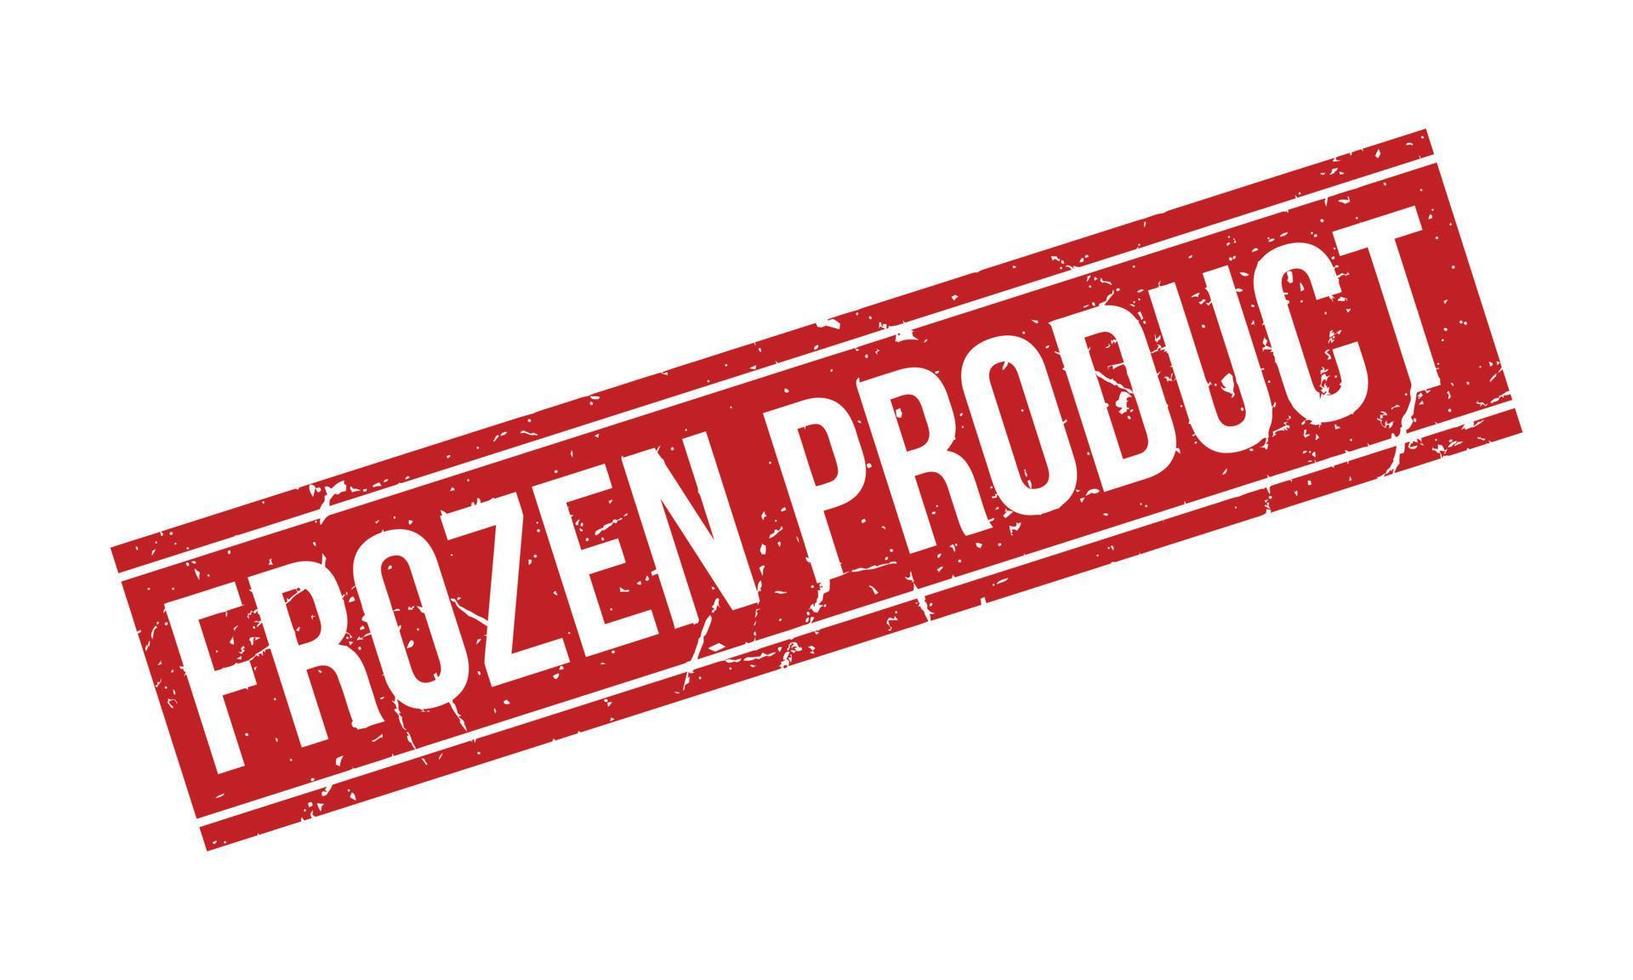 bevroren Product rubber stempel. rood bevroren Product rubber grunge postzegel zegel vector illustratie - vector